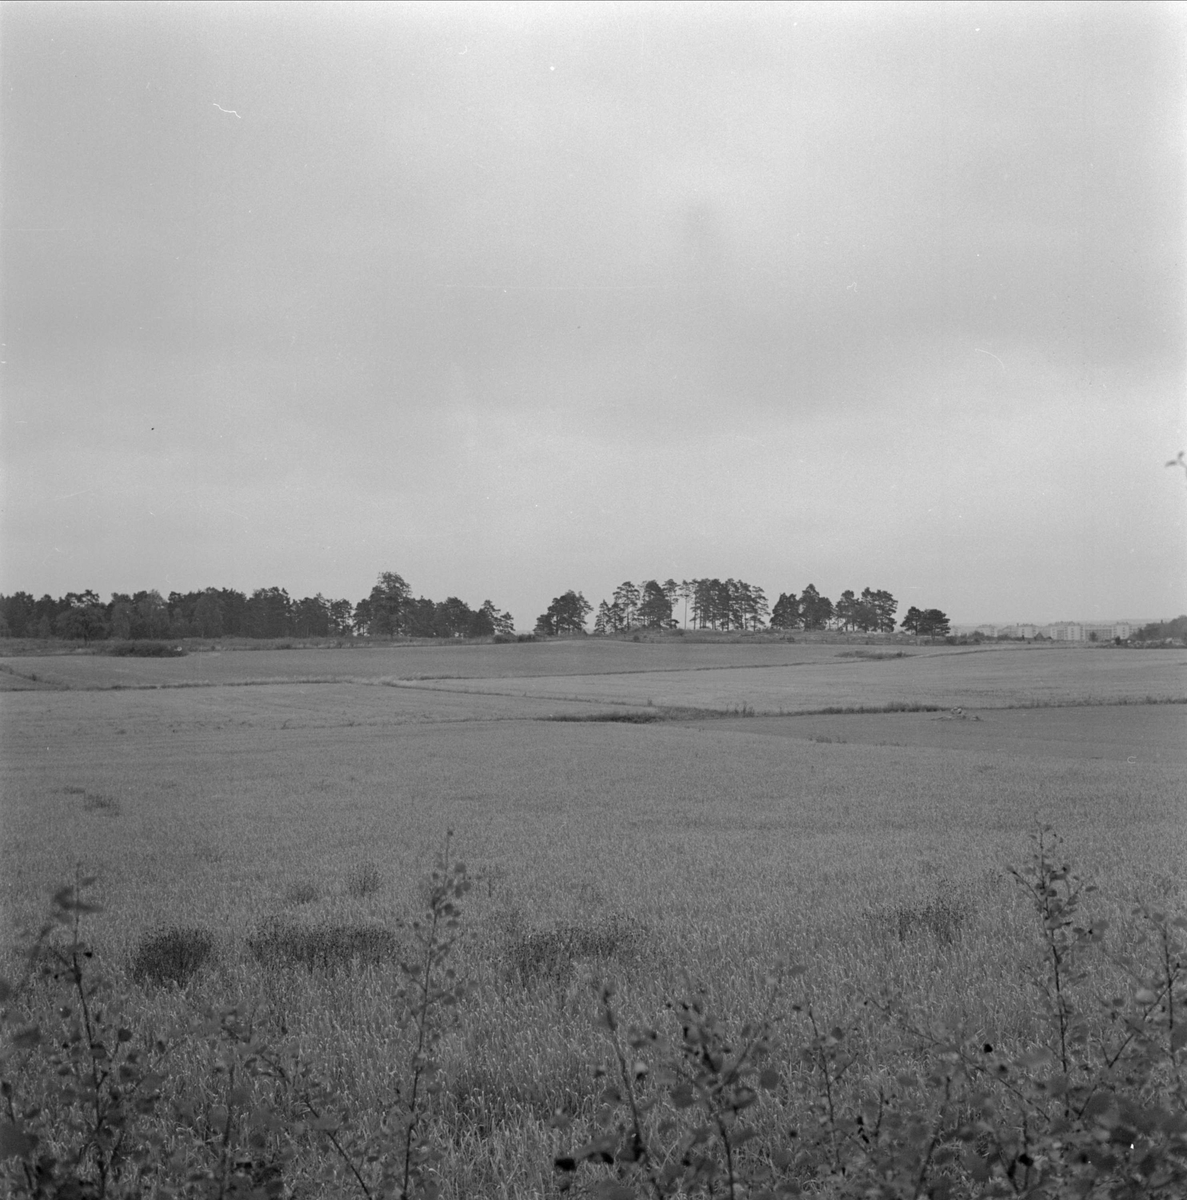 Vy över mark för nya kyrkogårdsområdet, Berthåga, Uppsala oktober 1955